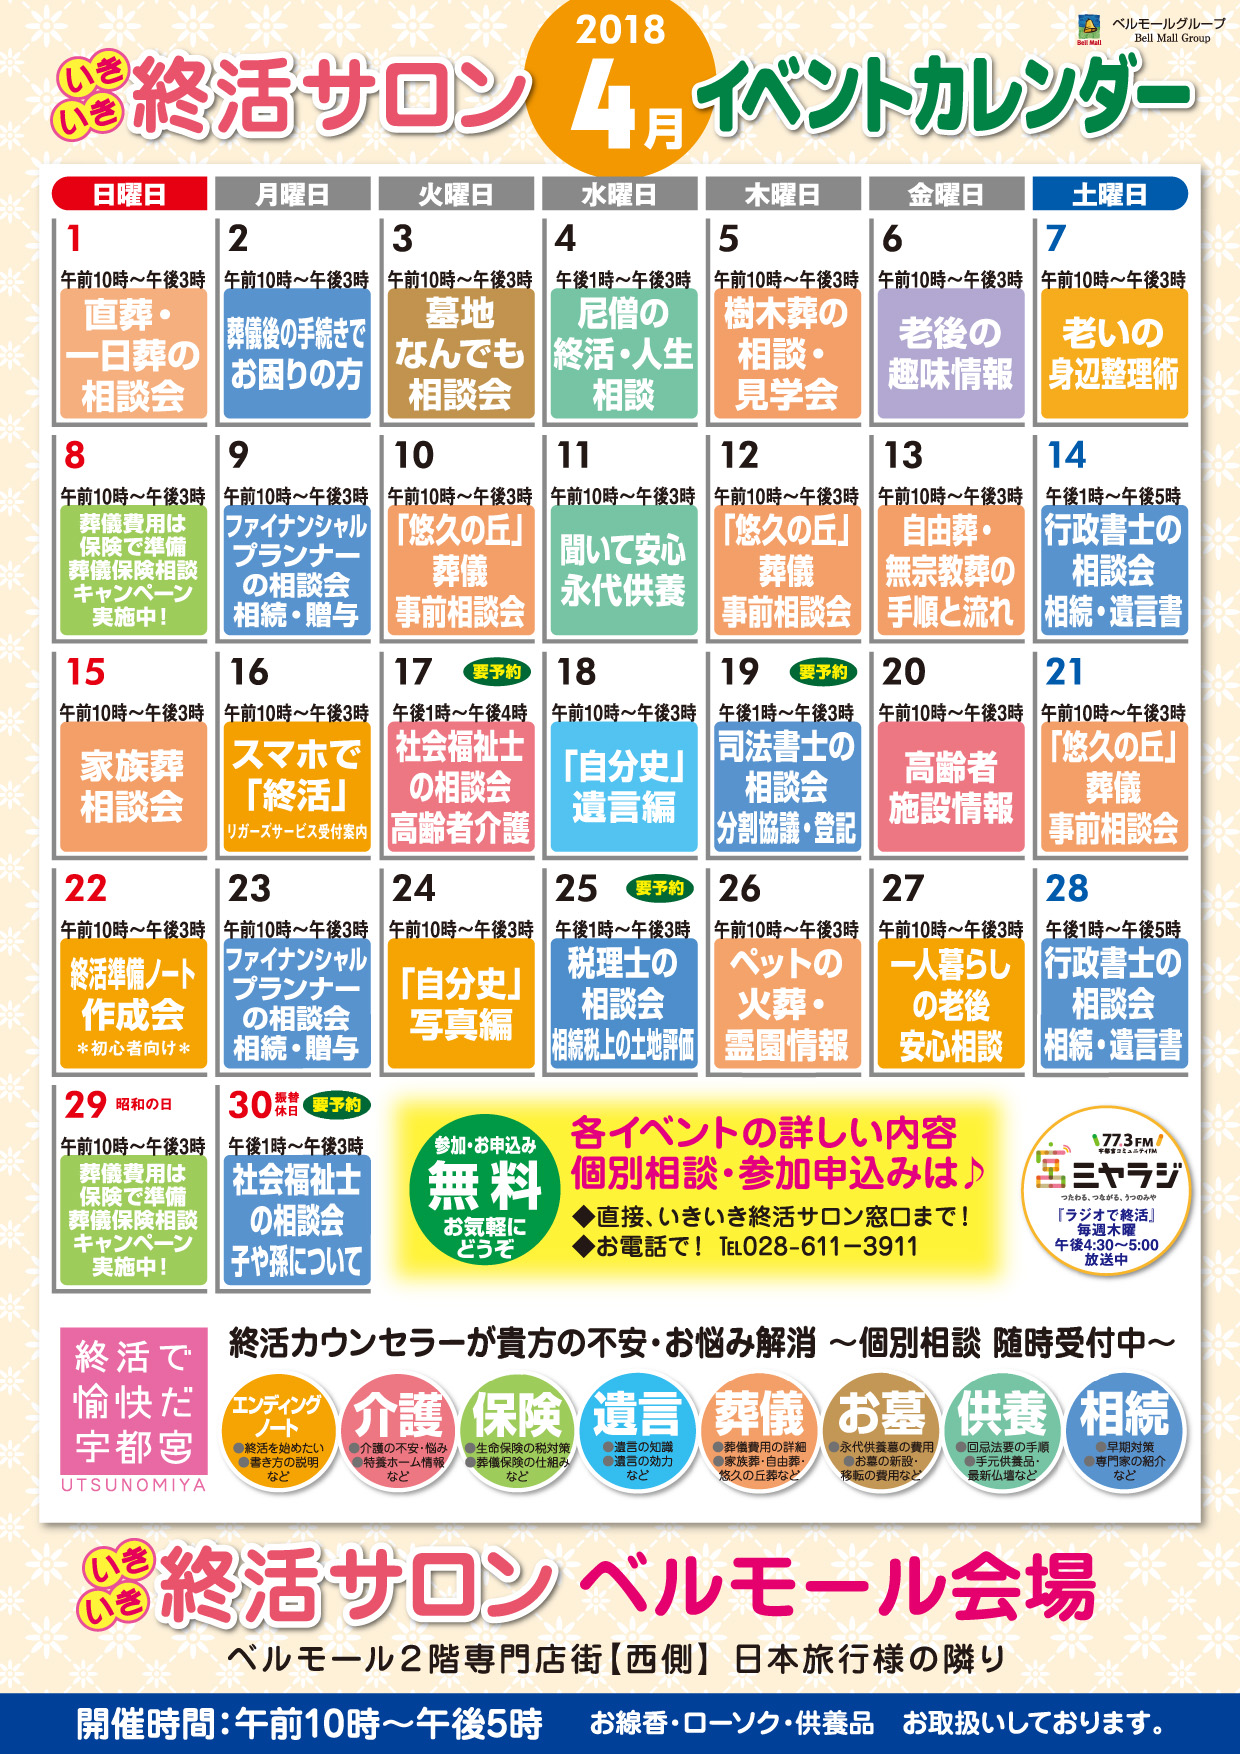 いきいき終活サロン4月イベントカレンダー